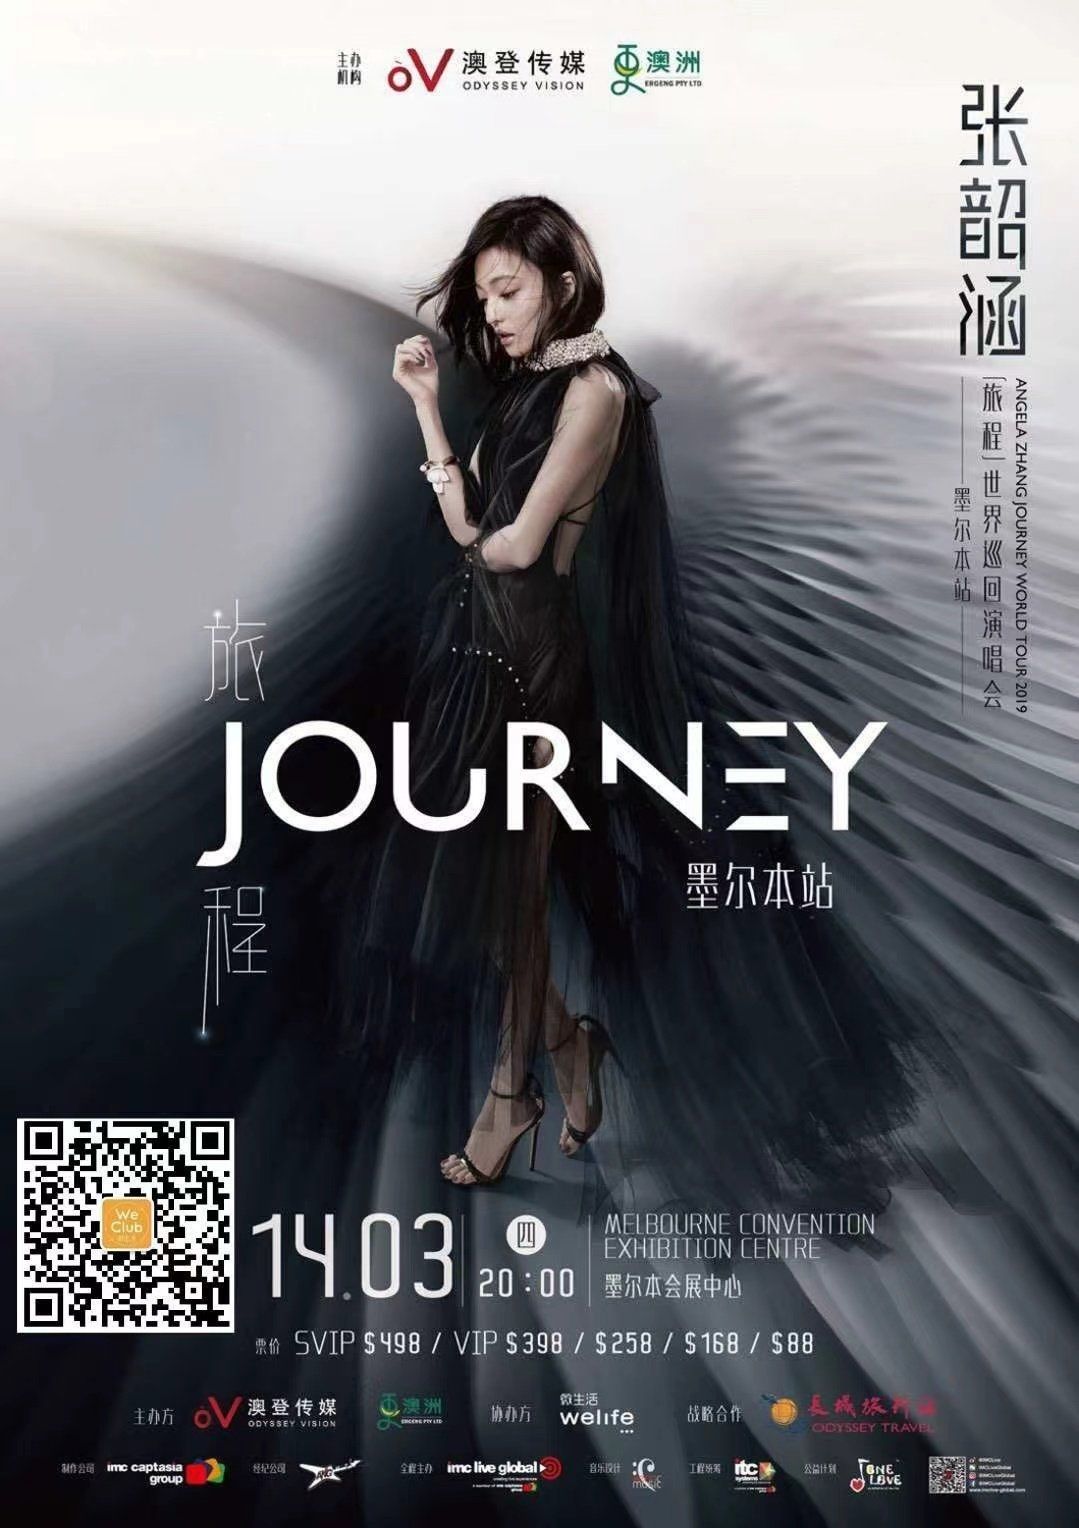 journey angela zhang